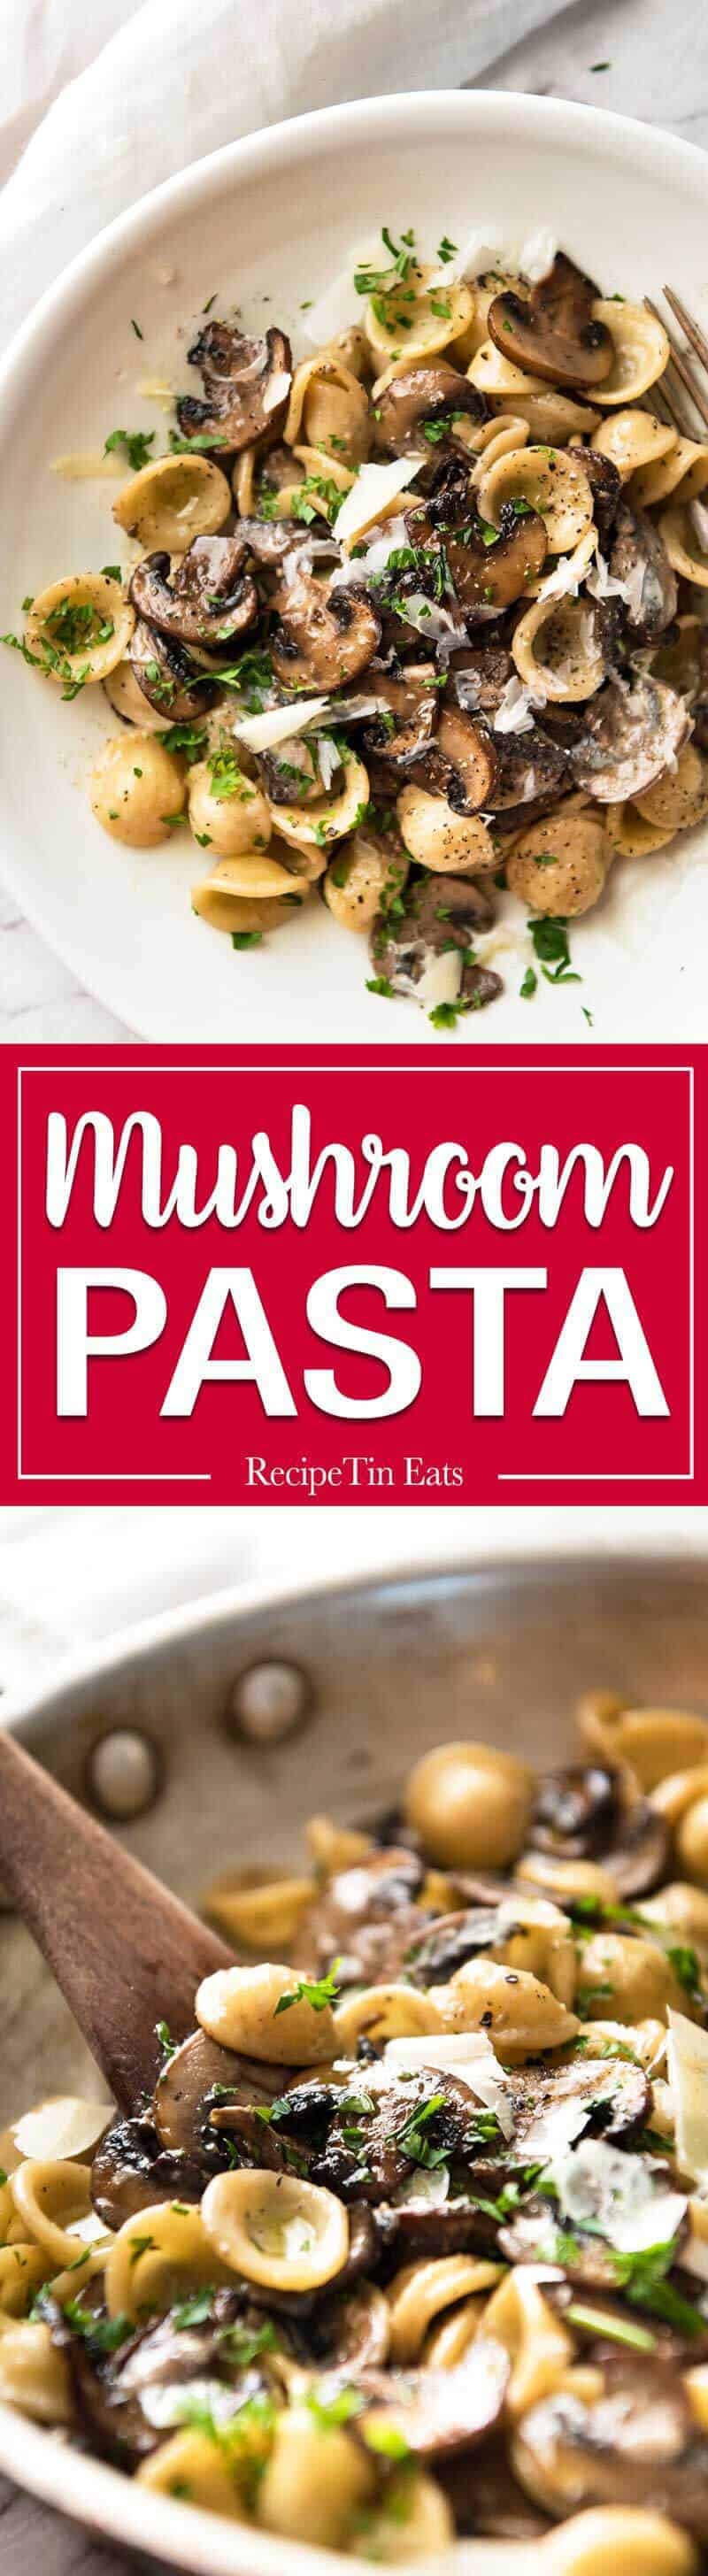 Uma maneira espetacular de usar cogumelos - nesta saborosa e suculenta massa de cogumelos feita à clássica maneira italiana.  15 minutos de jantar!  www.recipetineats.com